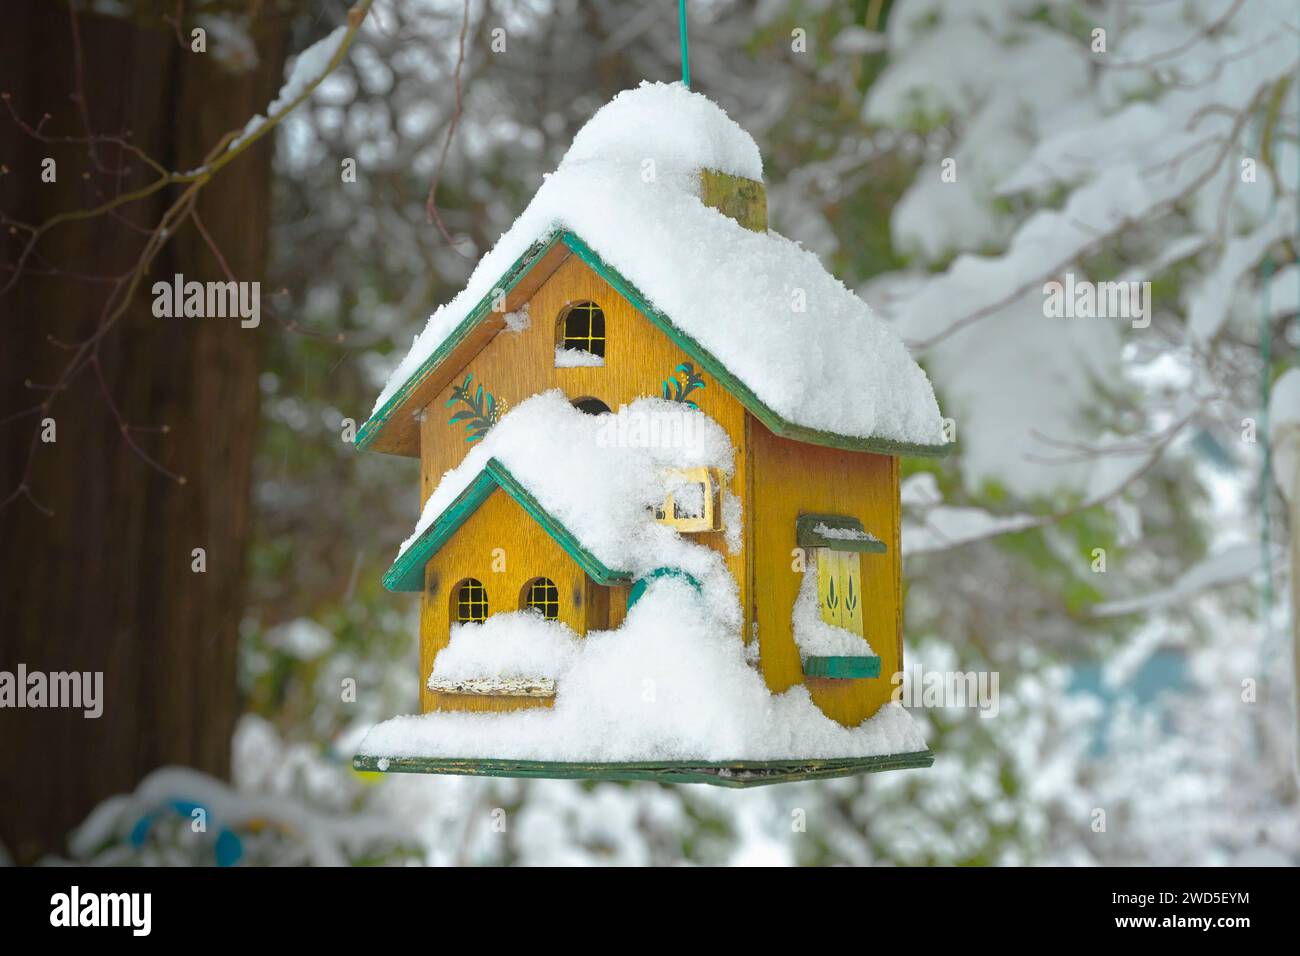 Neve sulla Birdhouse ornata, inverno Foto Stock